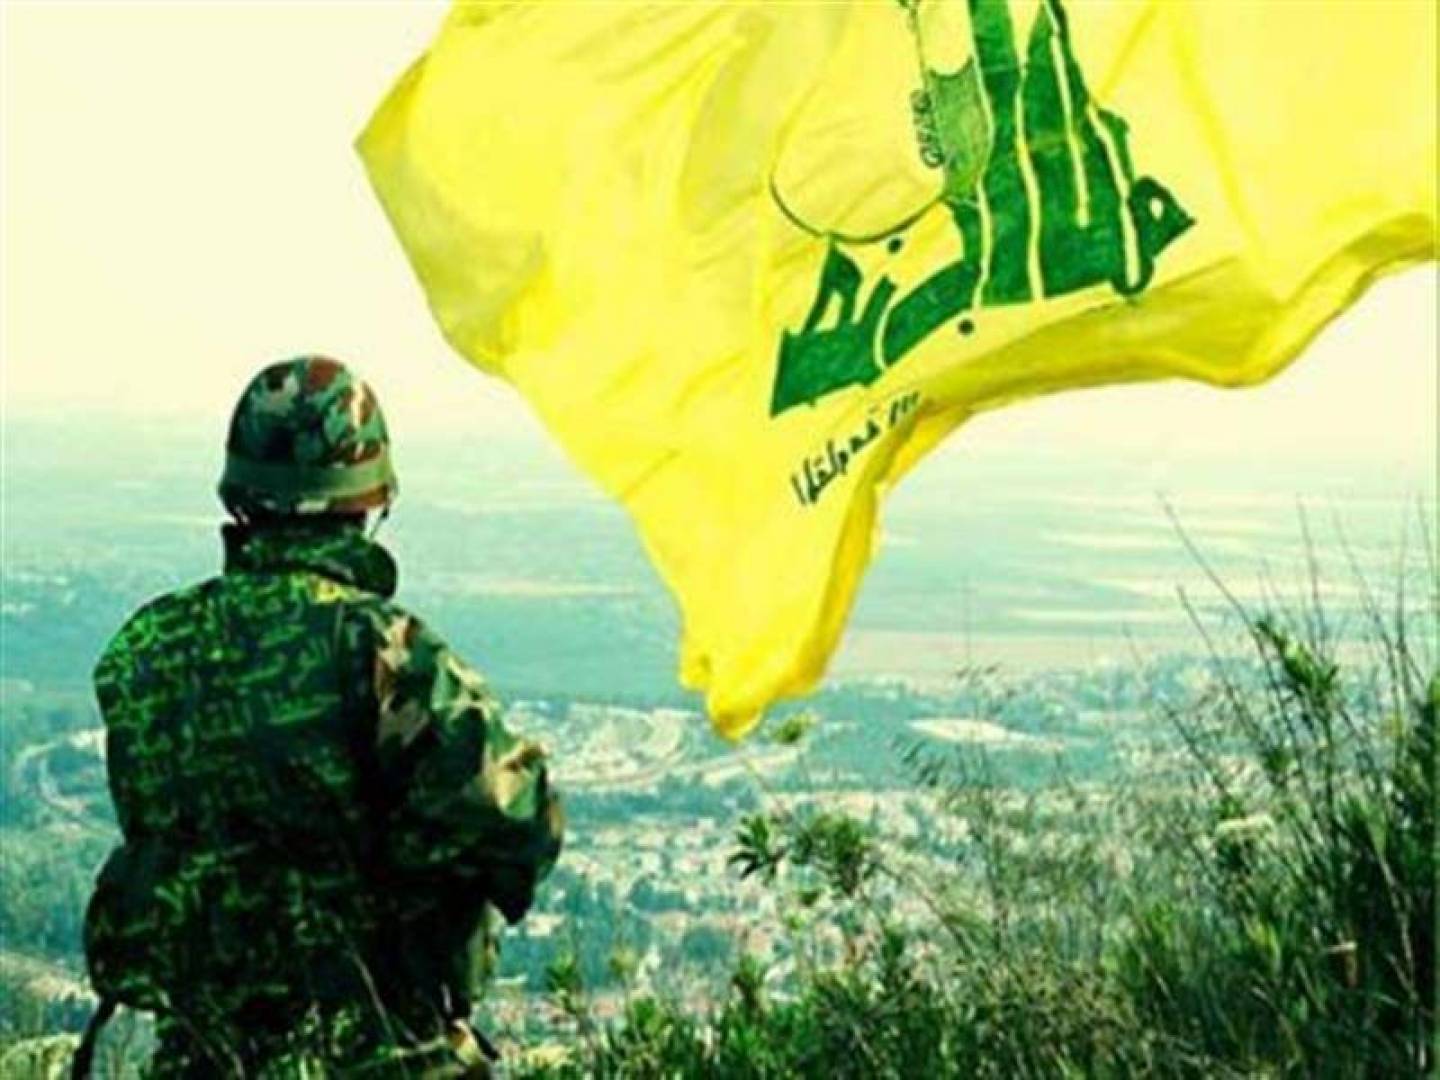 كتب الأستاذ حليم خاتون: حزب الله، إلى الأمام در!